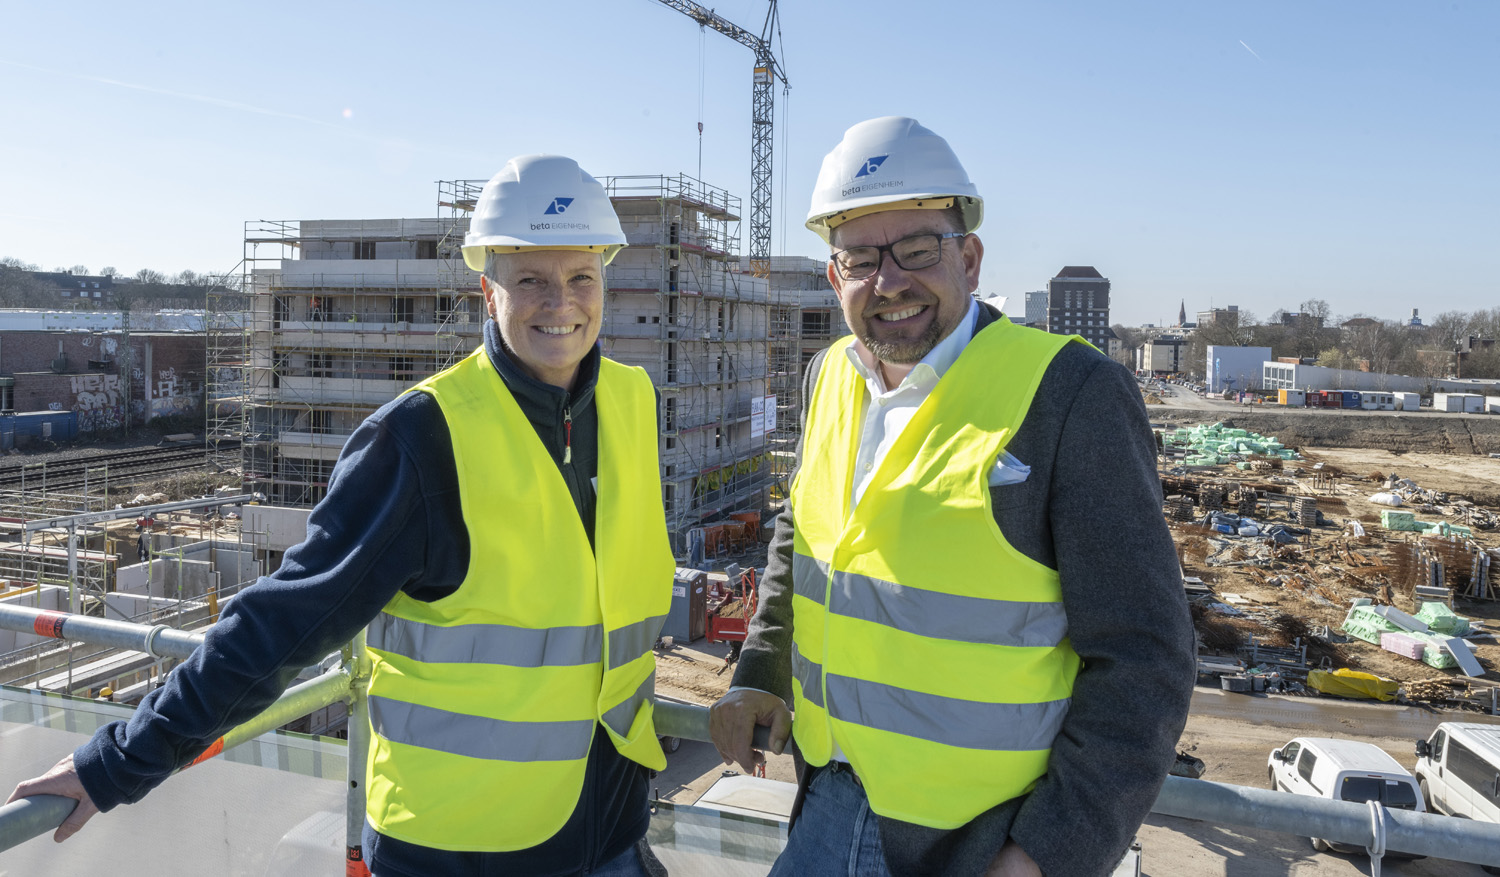 Sonja Mrugalla und Dirk Salewski vor der Baustelle Kronprinzenviertel, Dortmund